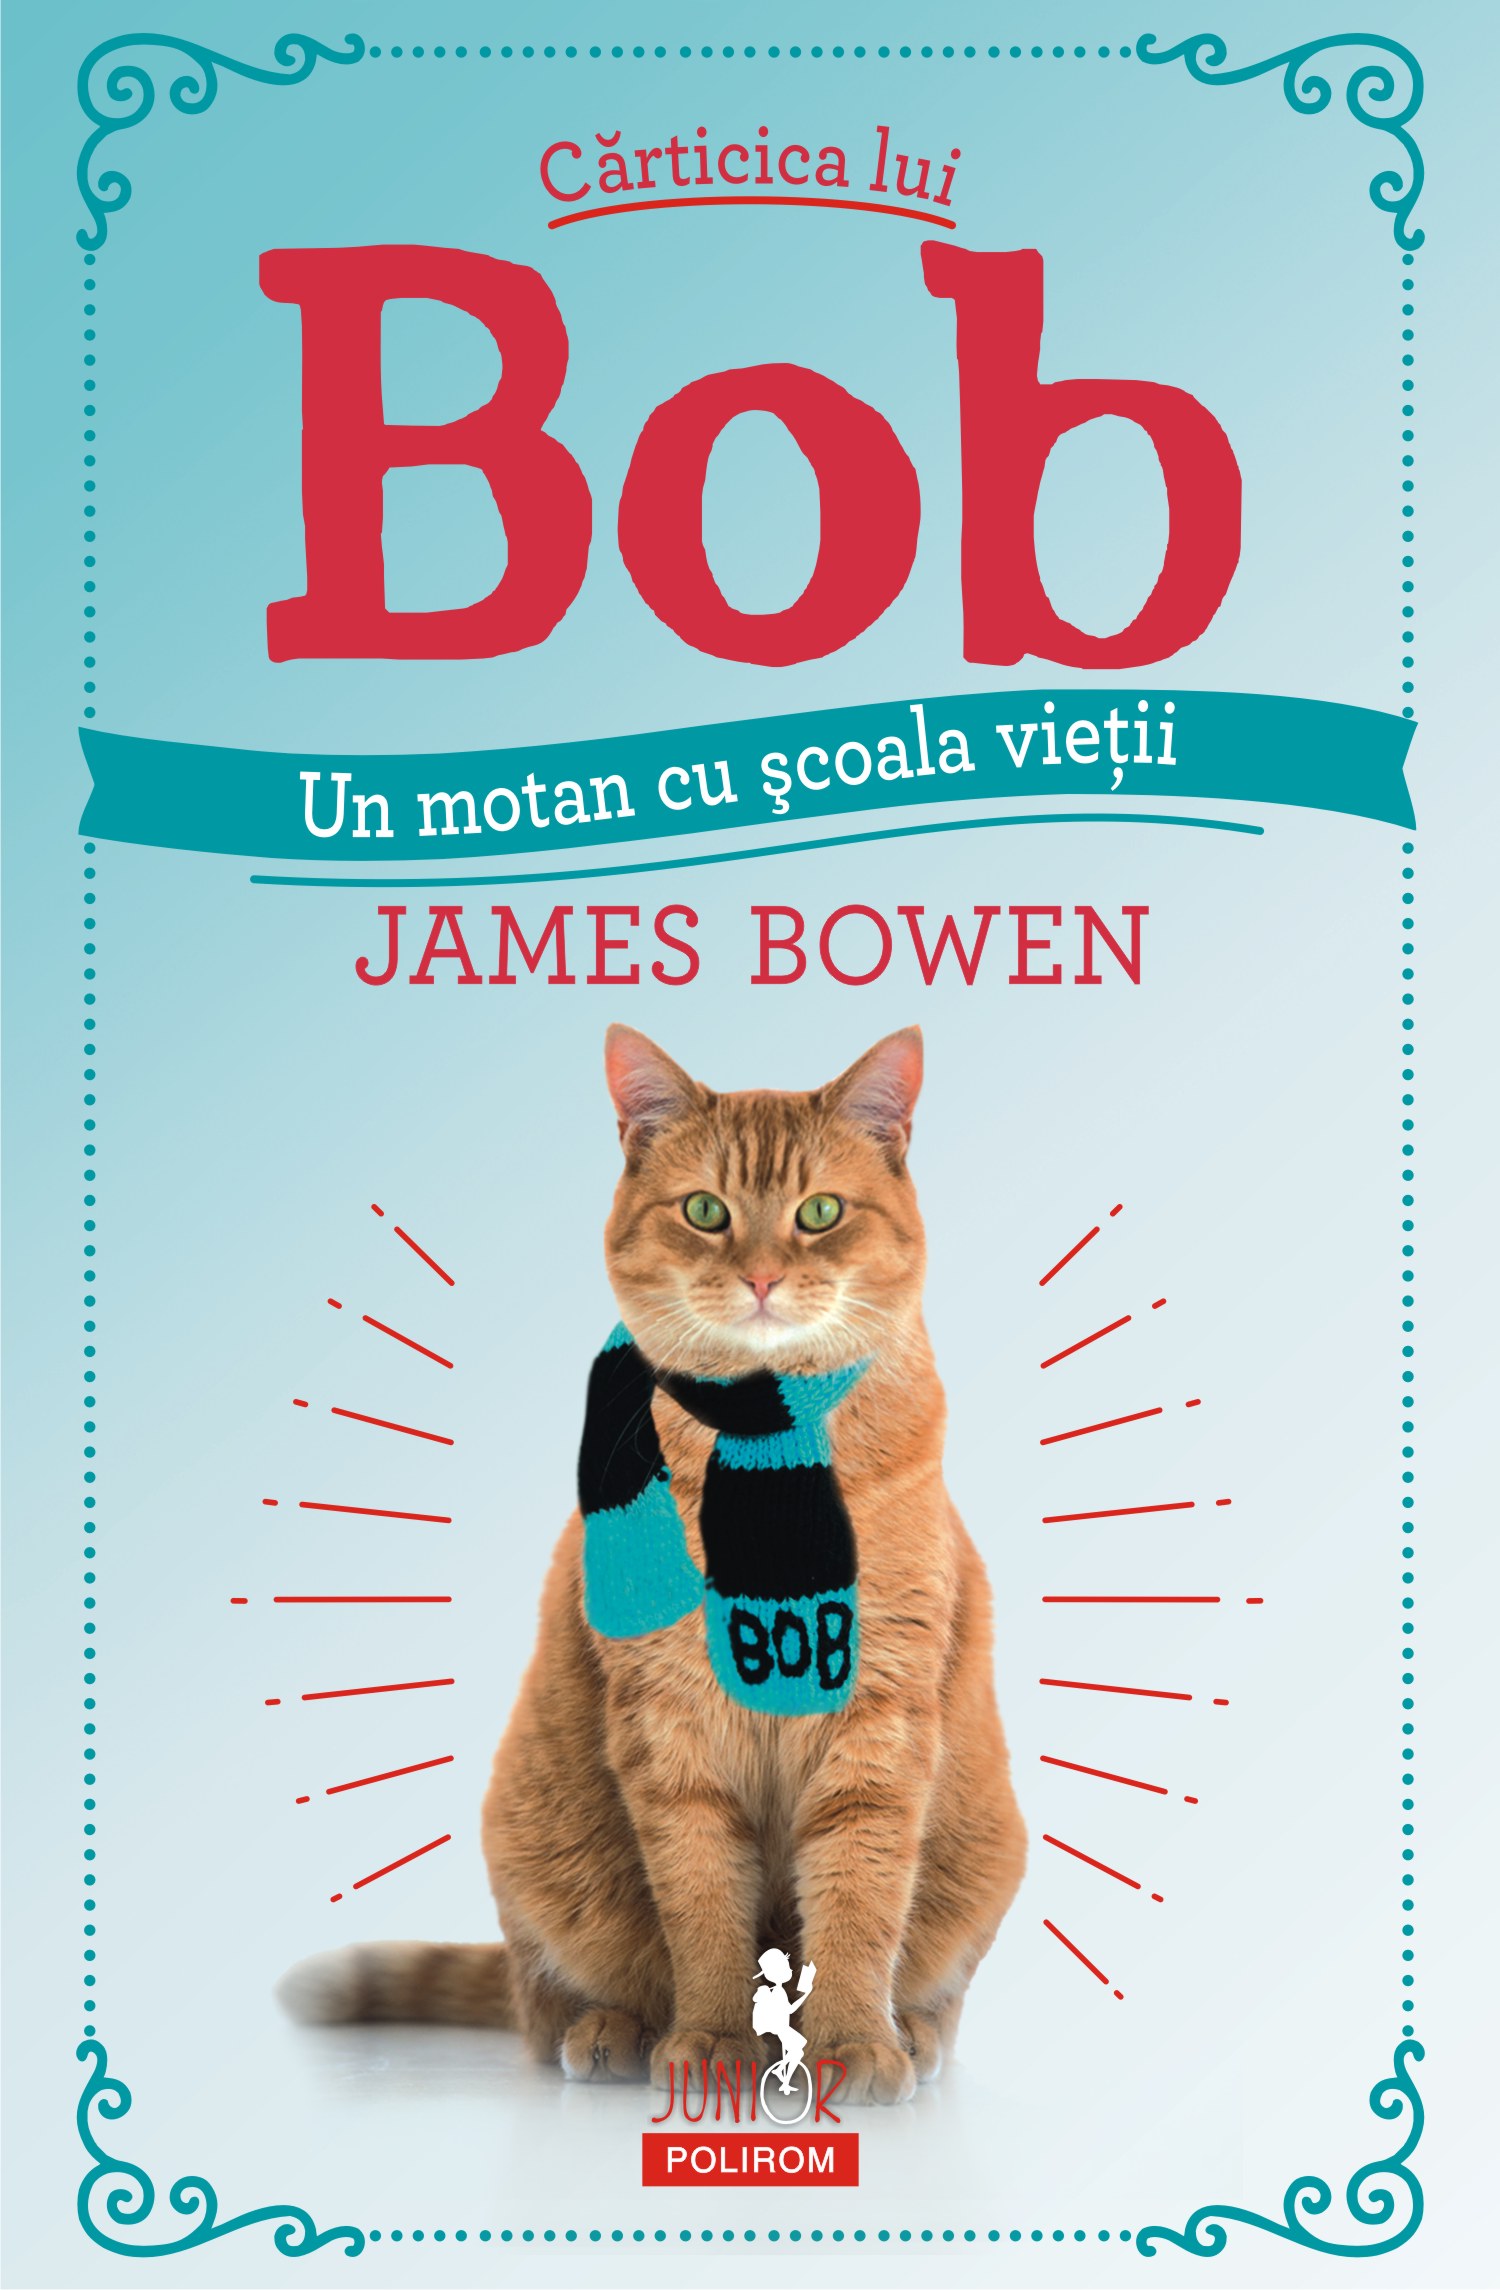 eBook Carticica lui Bob, un motan cu scoala vietii - James Bowen